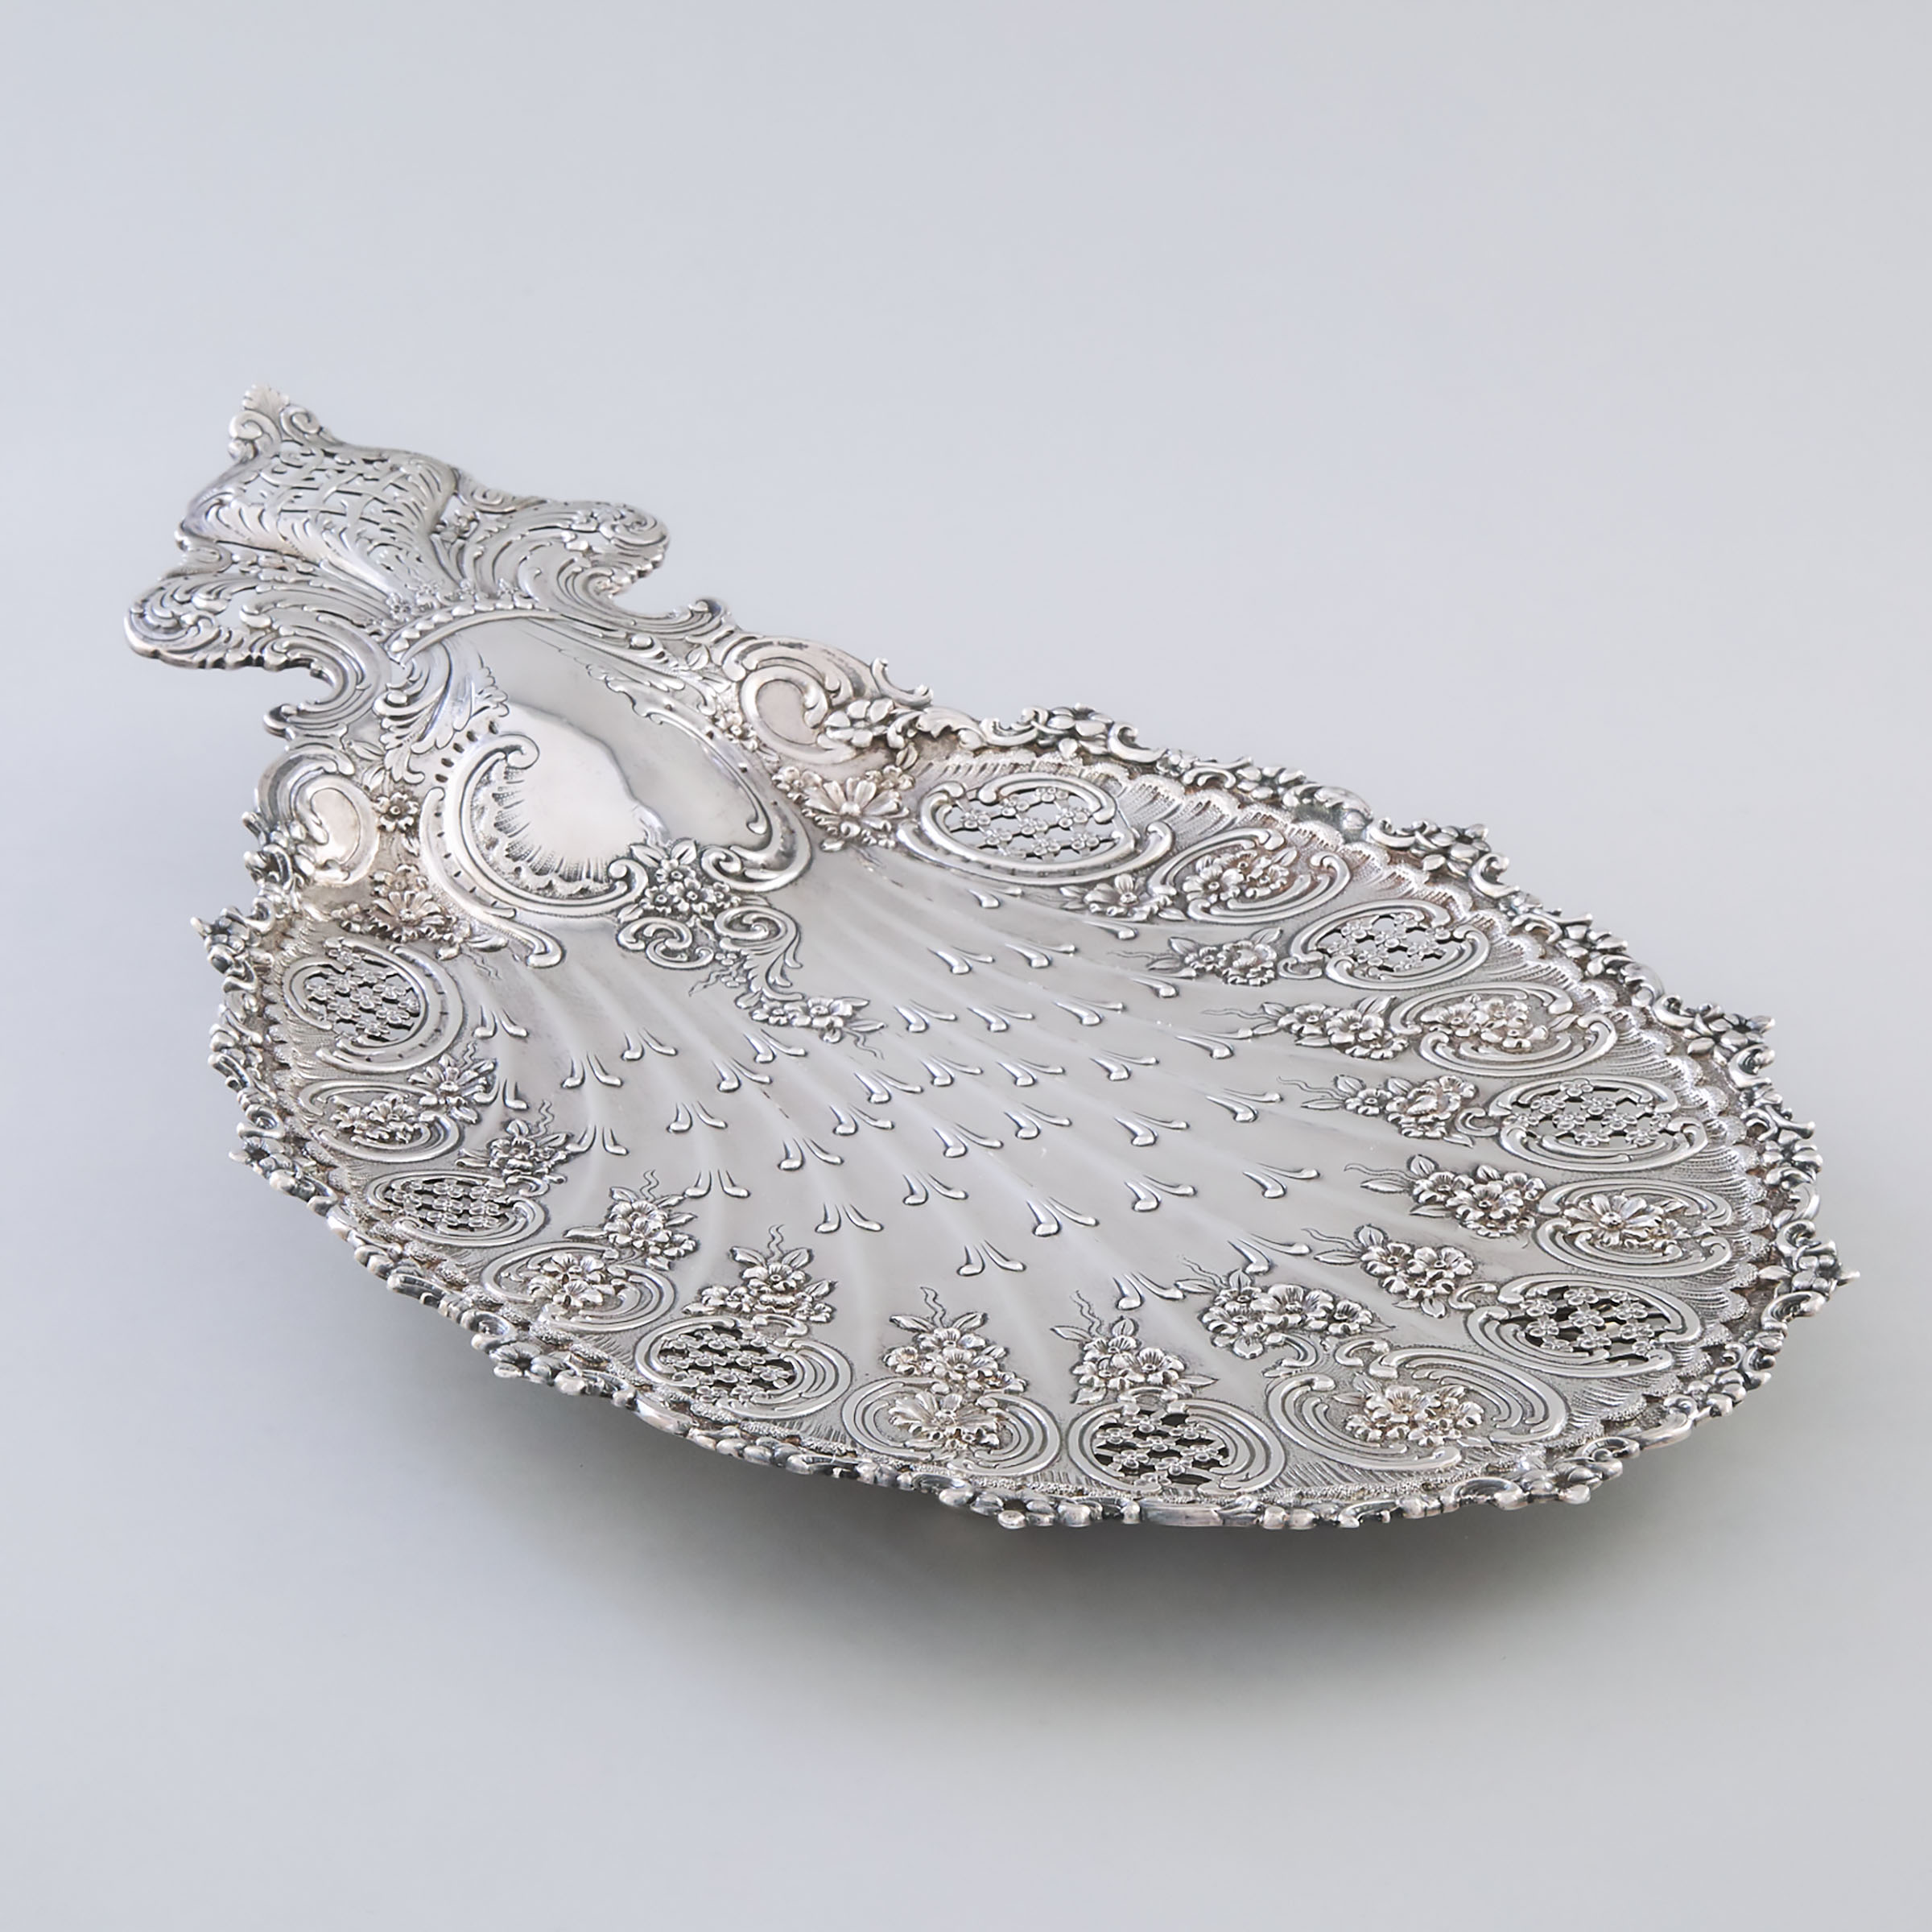 American Silver Pierced Shell Shaped Serving Tray, Tiffany & Co., New York, N.Y., c.1902-07